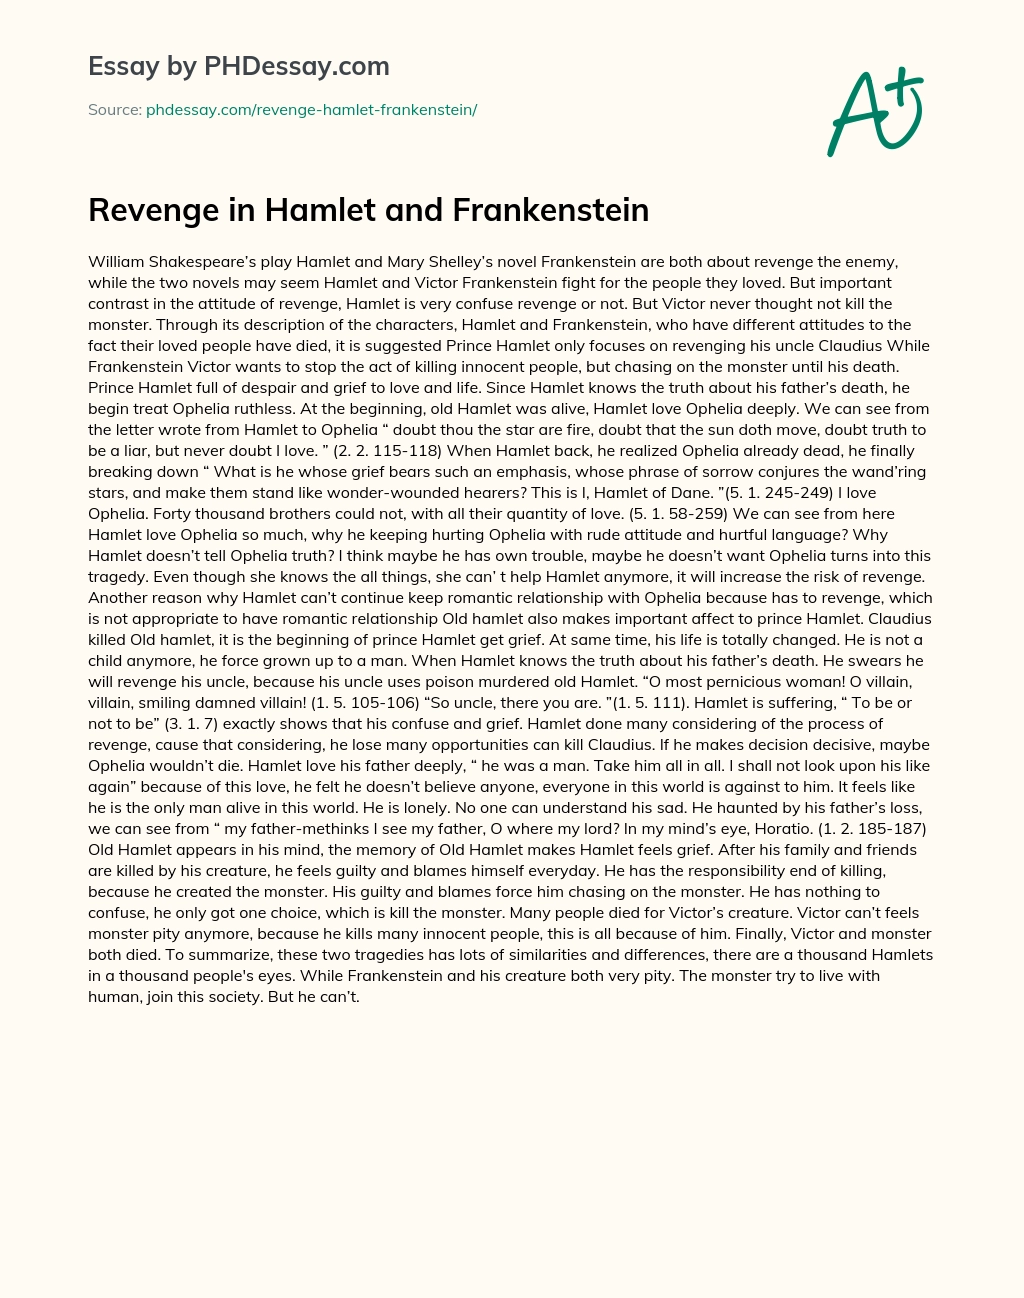 Revenge in Hamlet and Frankenstein essay